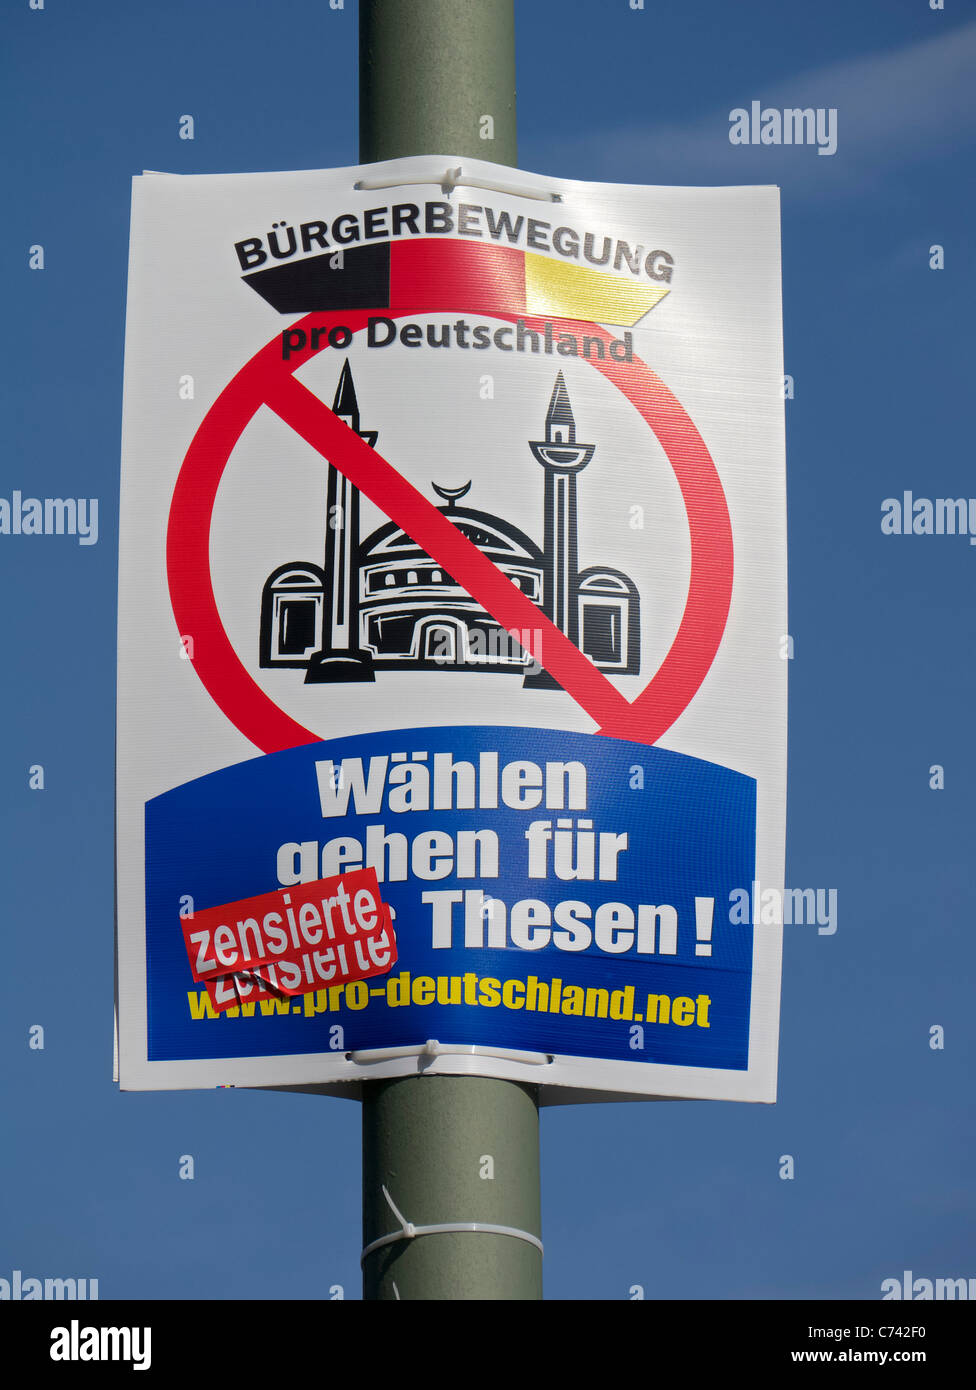 Politica Anti-Islamic cartellone elettorale da pro Germania movimento di cittadini Party a Berlino Germania prima delle elezioni il 18 settembre Foto Stock